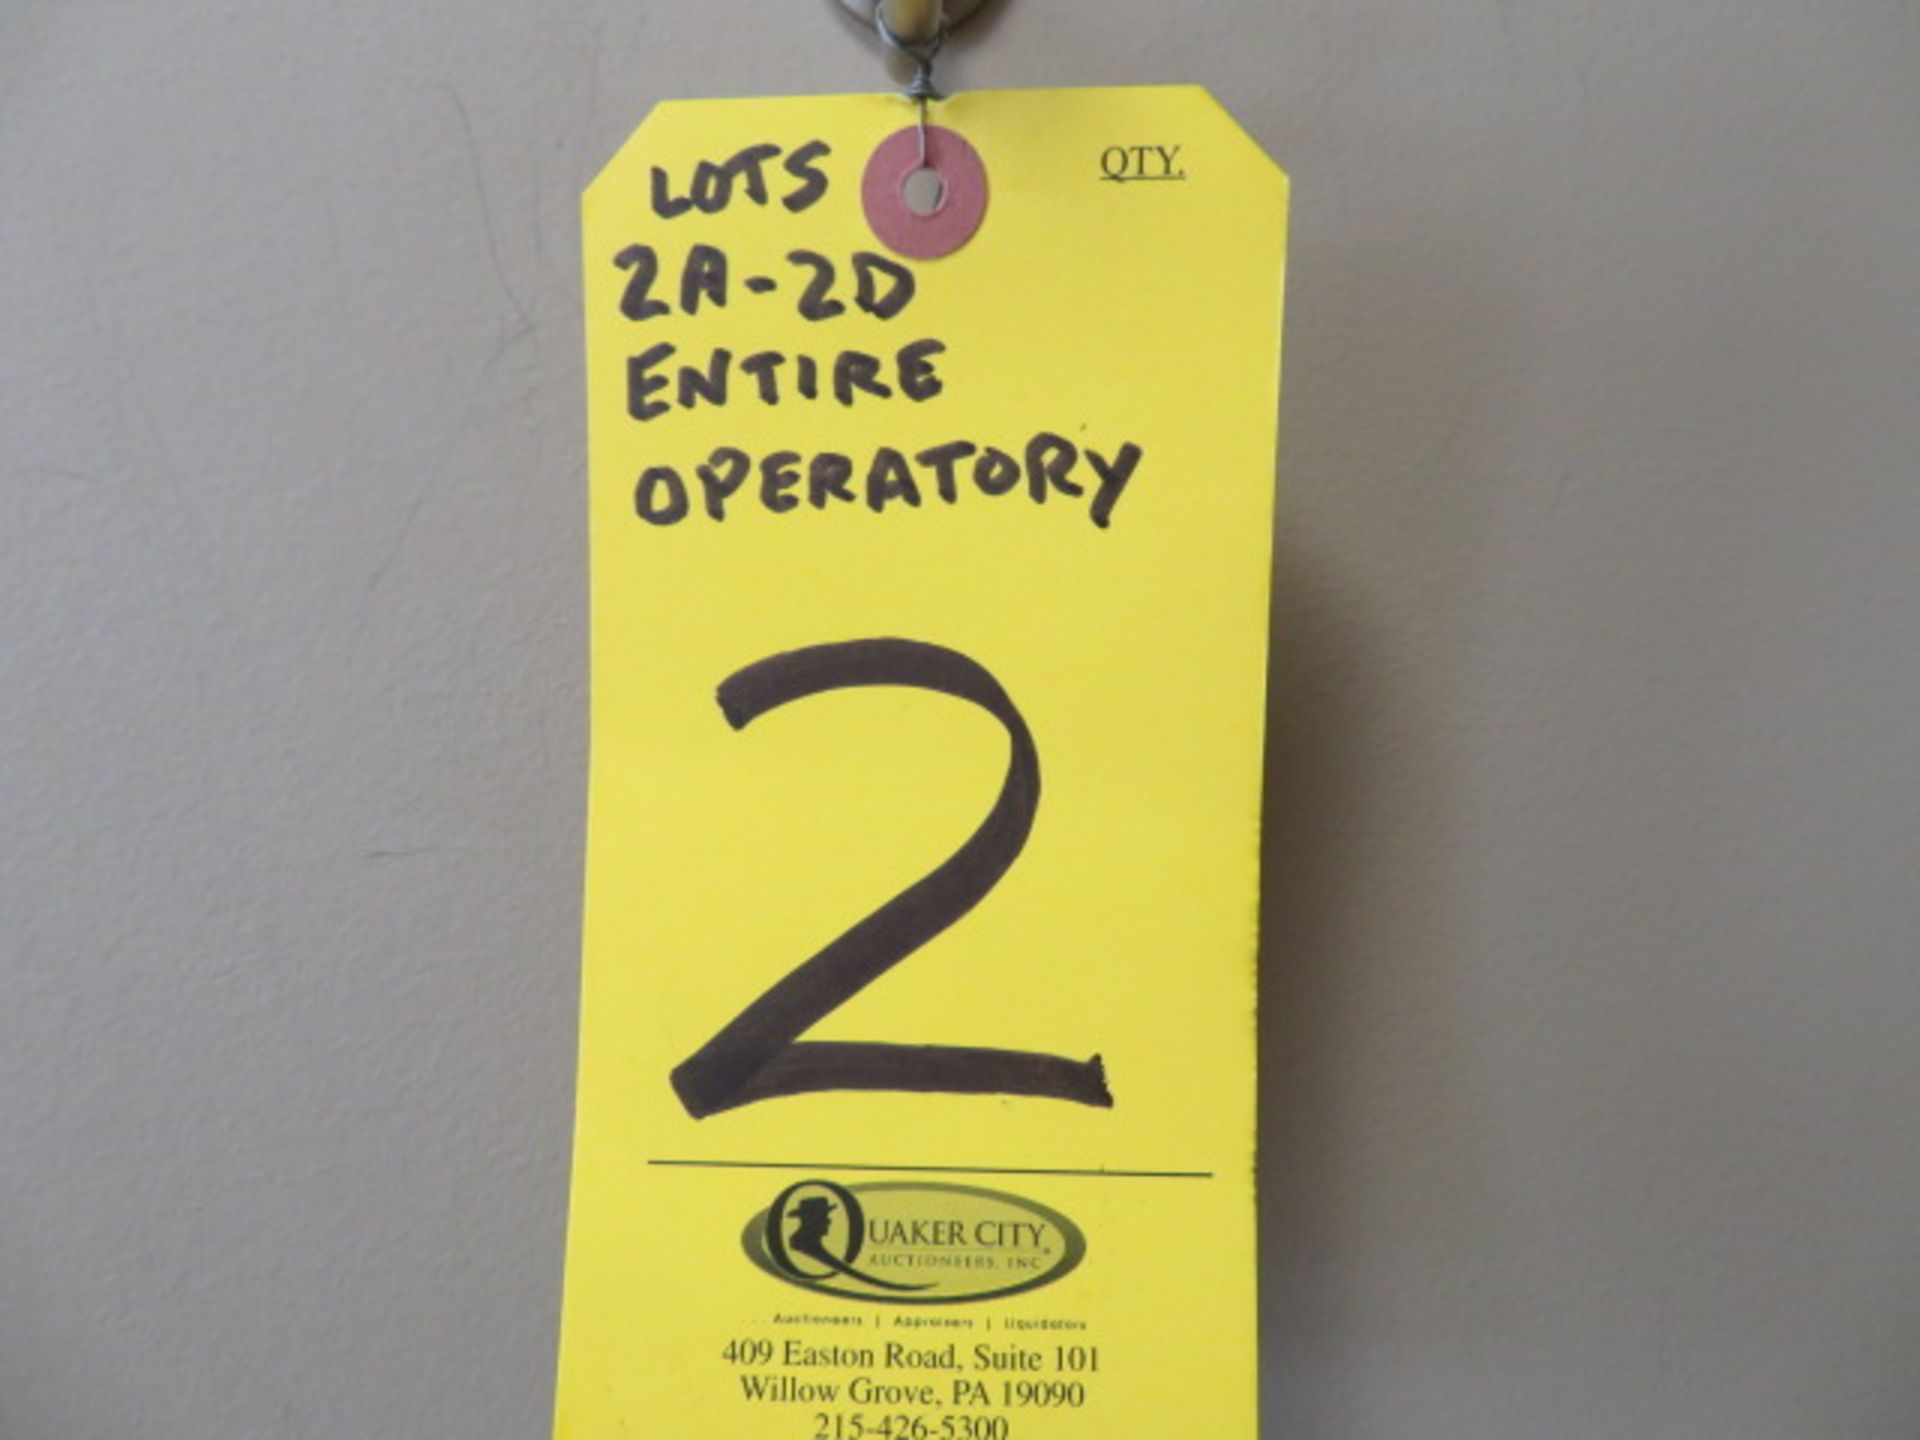 BULK BID -- ENTIRE OPERATORY ROOM INCLUDING LOTS# 2A-2D